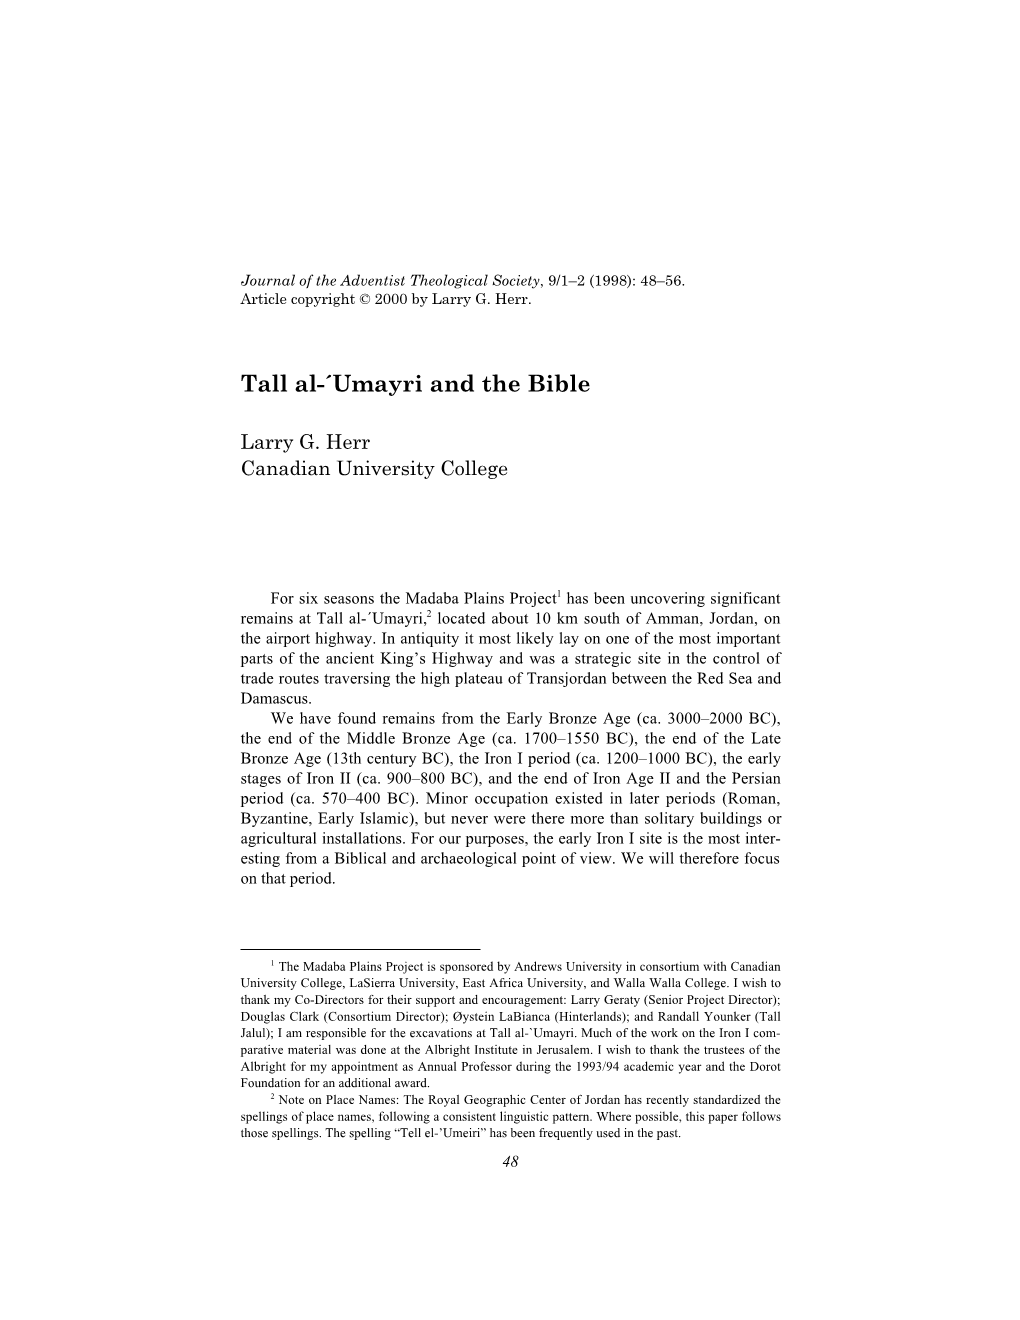 Tall Al-´Umayri and the Bible